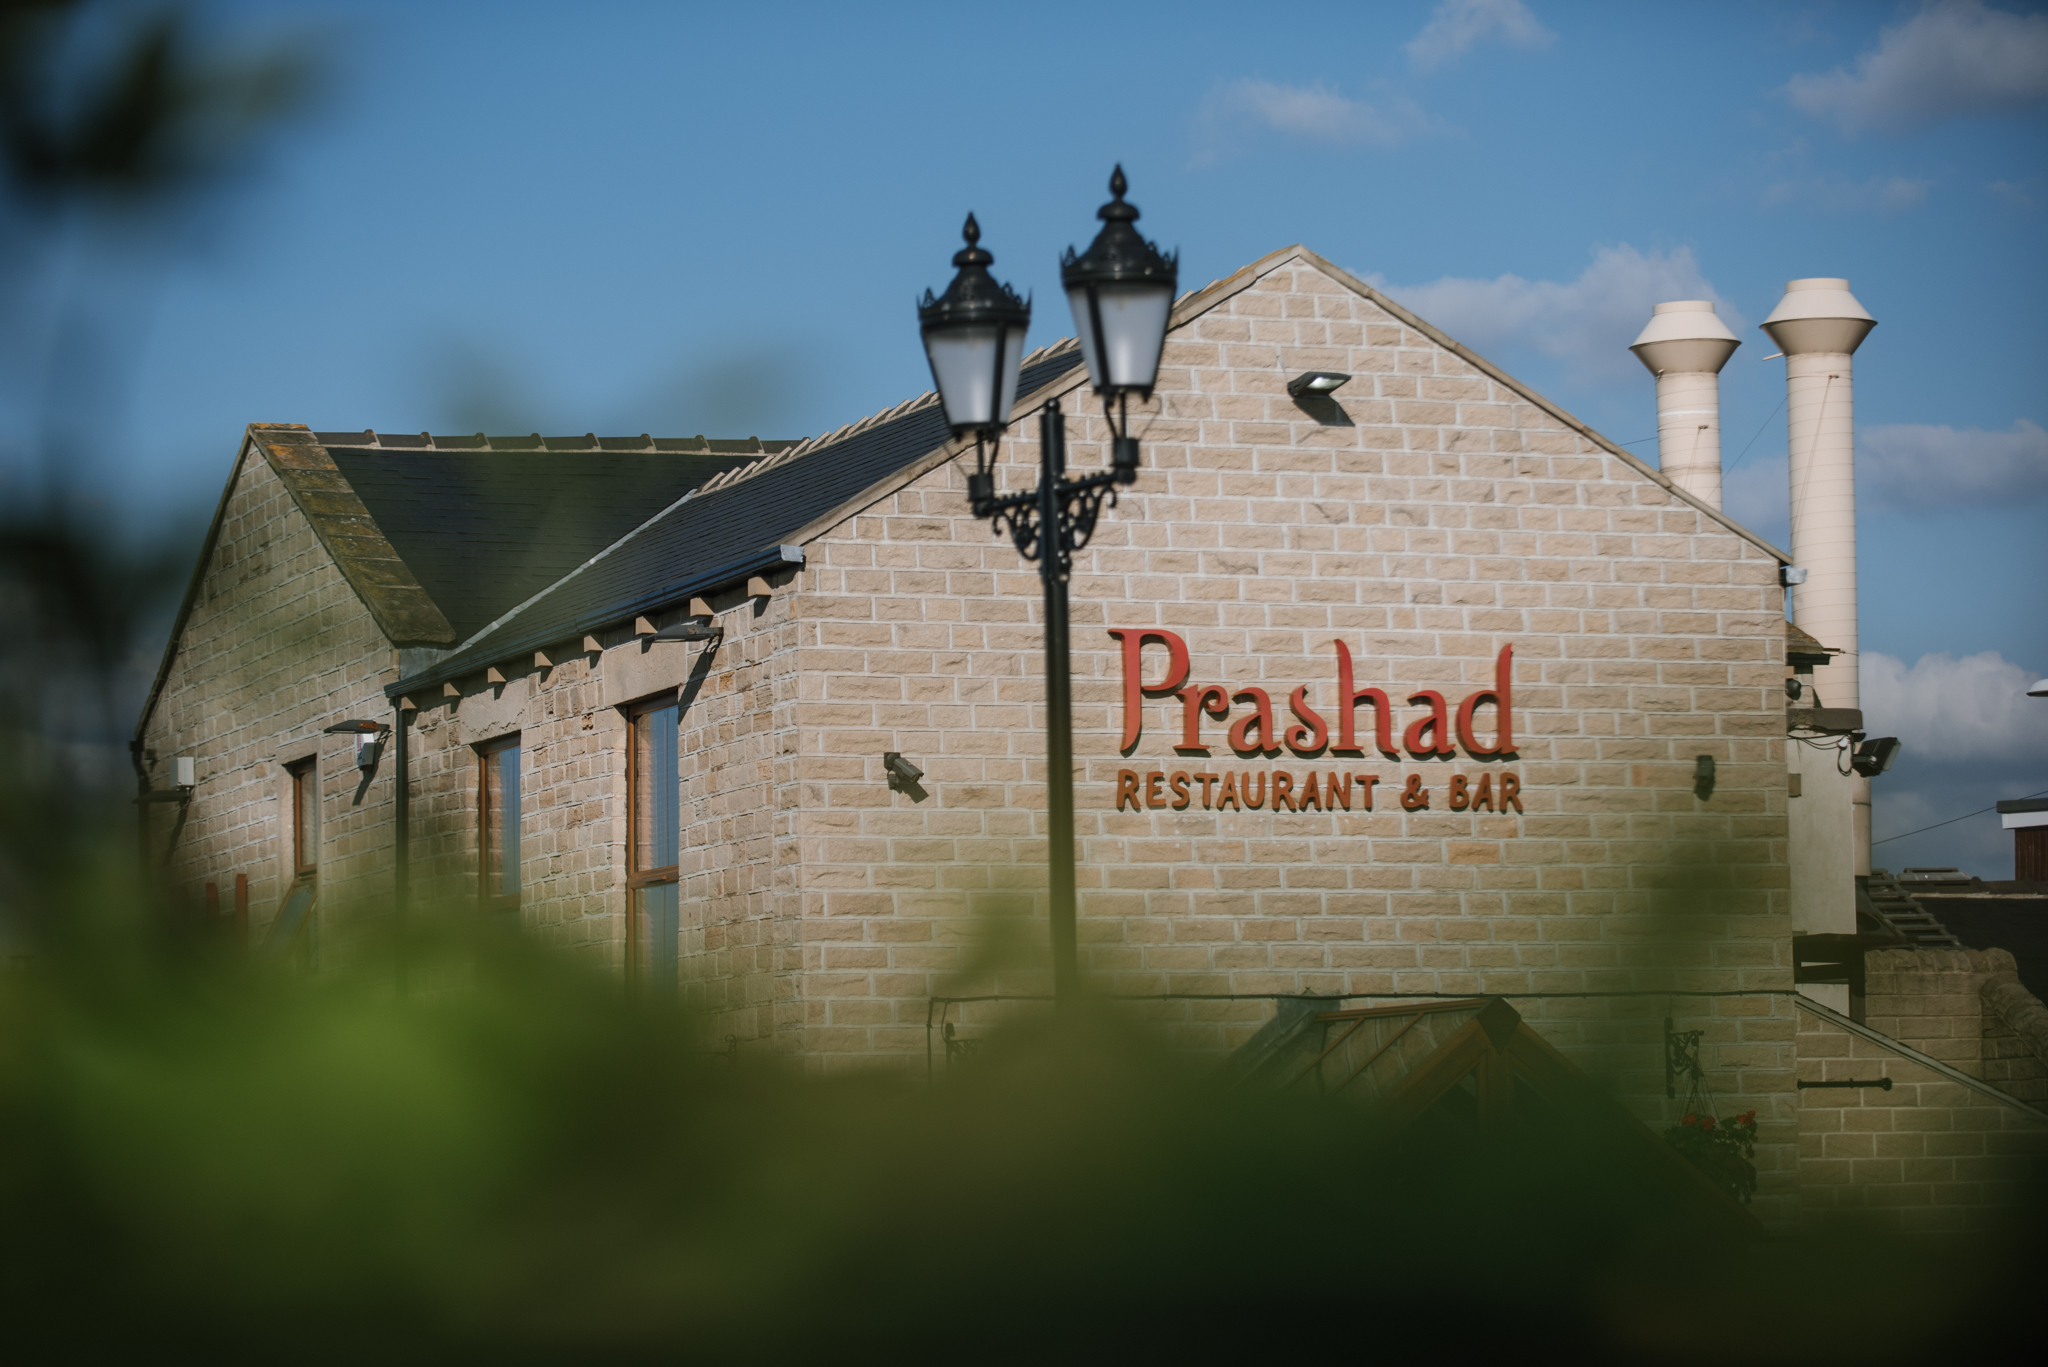 Prashad Restaurant